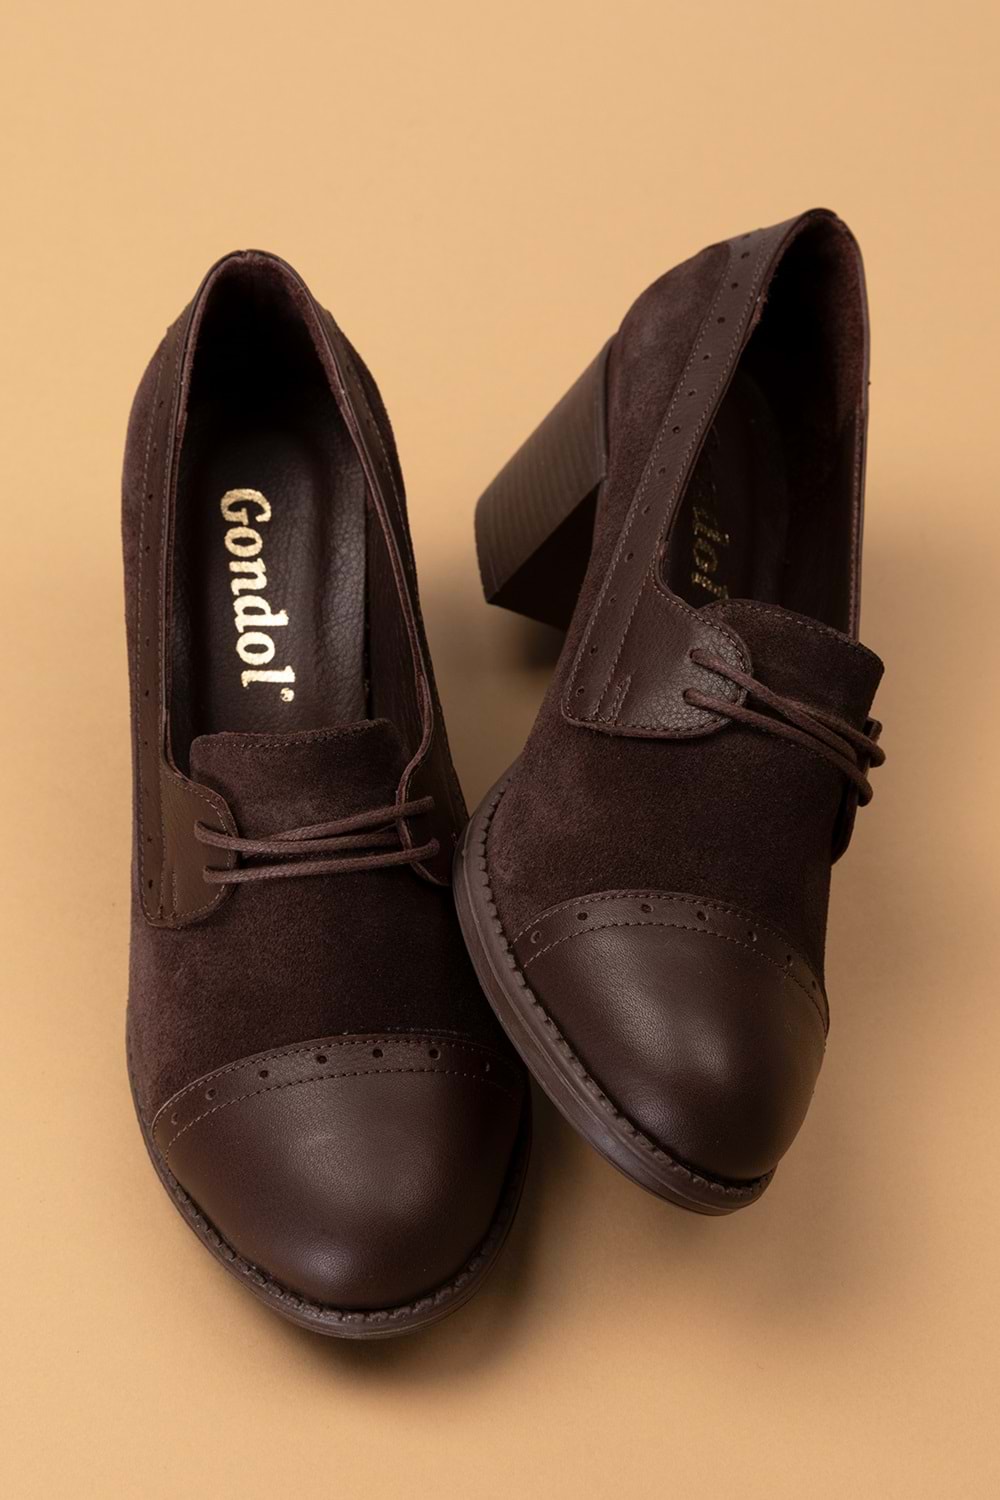 Gondol Kadın Hakiki Deri Rahat Topuklu Ayakkabı anl.7078 - Kahverengi - 40